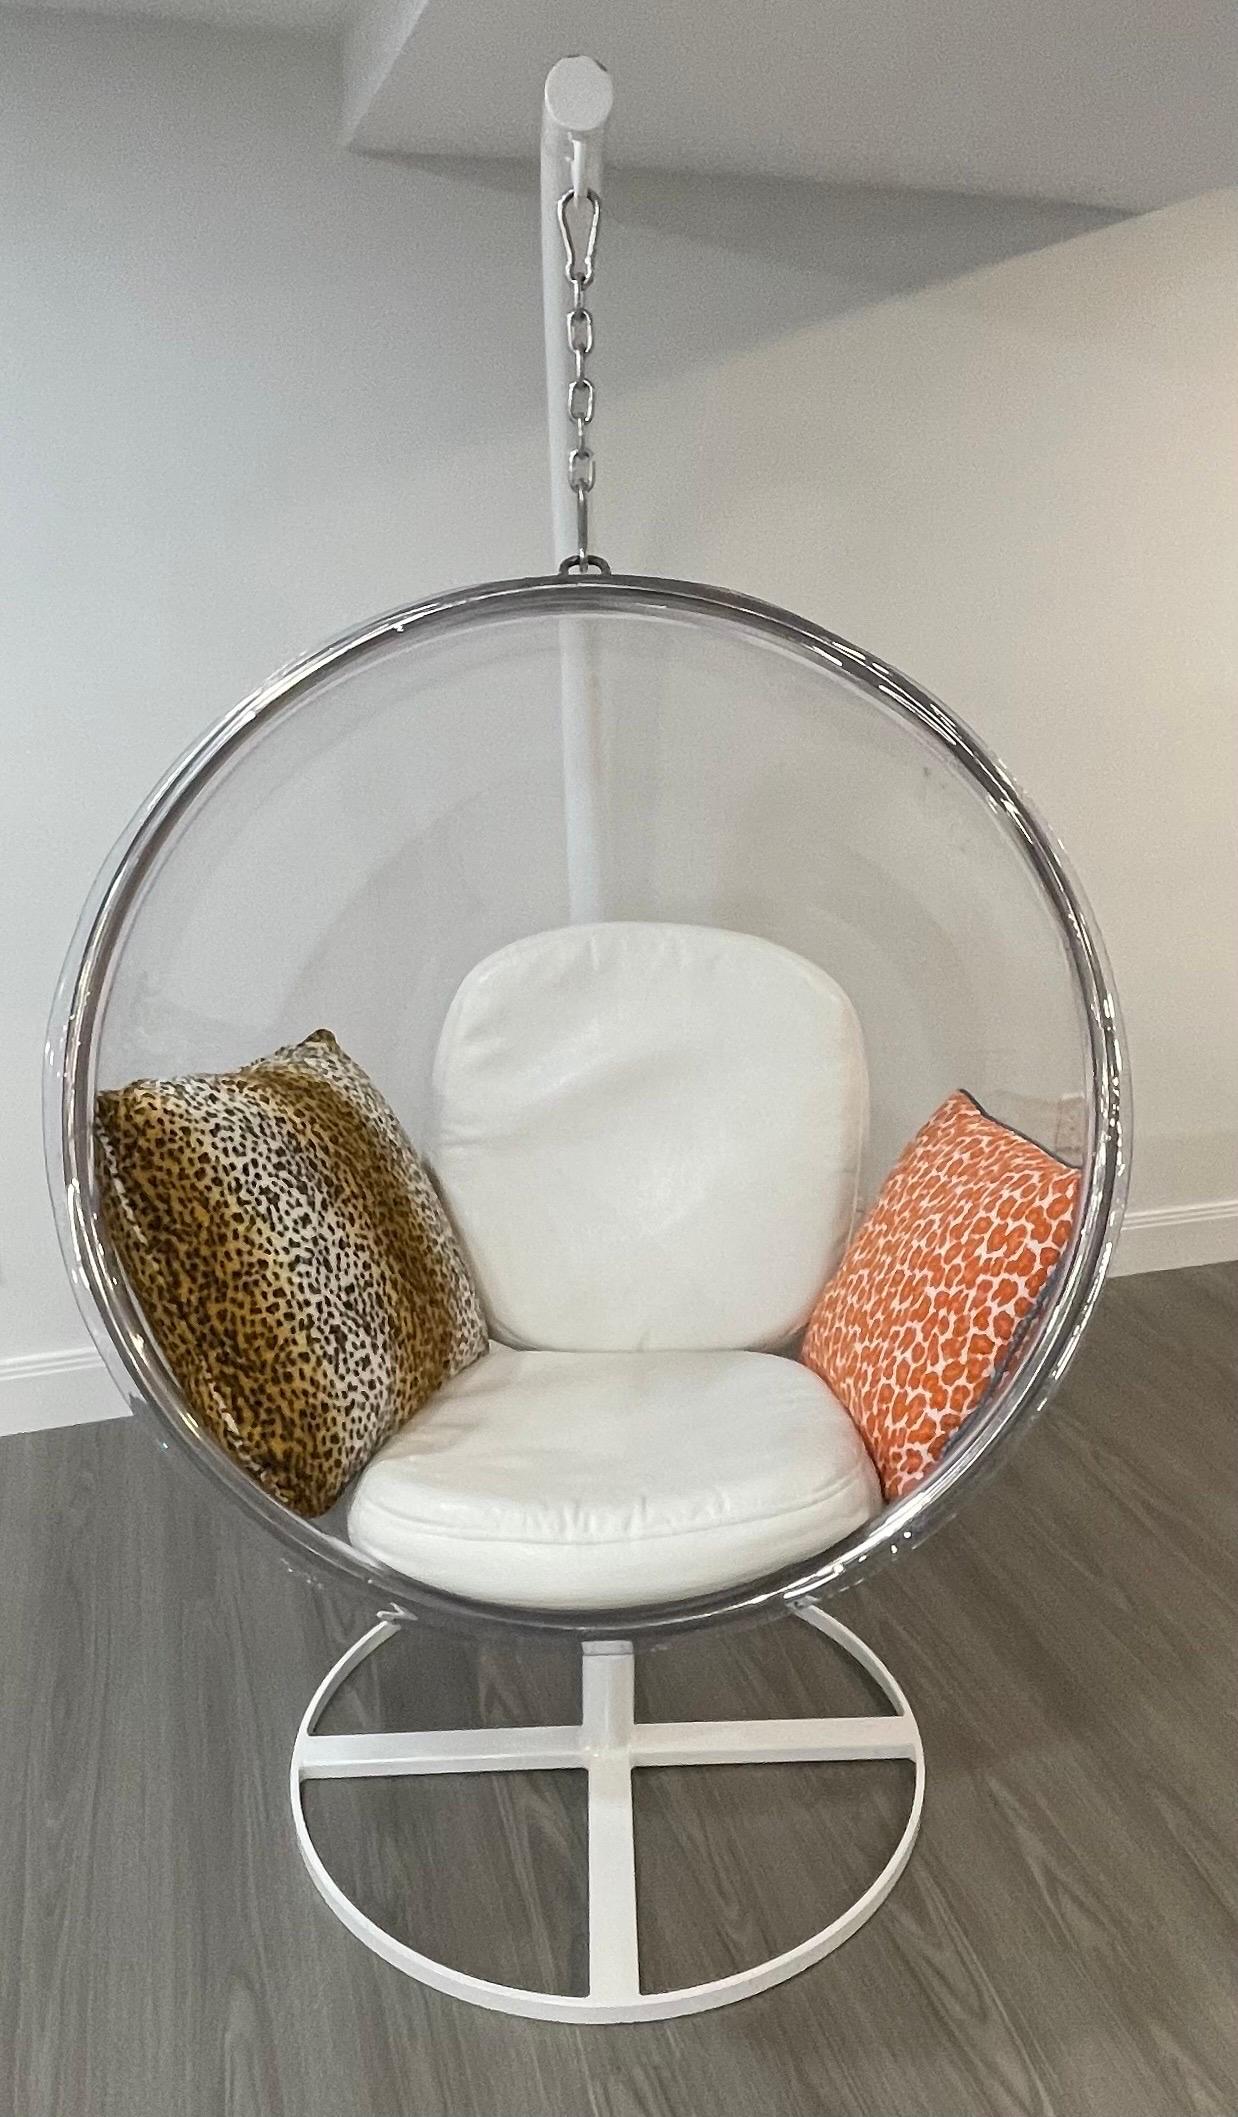 Une merveilleuse chaise bulle suspendue en Lucite / Acrylique de style Eero Aarnio avec un support enduit de poudre blanche, accompagnée de coussins en faux cuir blanc pour l'assise et le dossier et de deux coussins décoratifs à motif